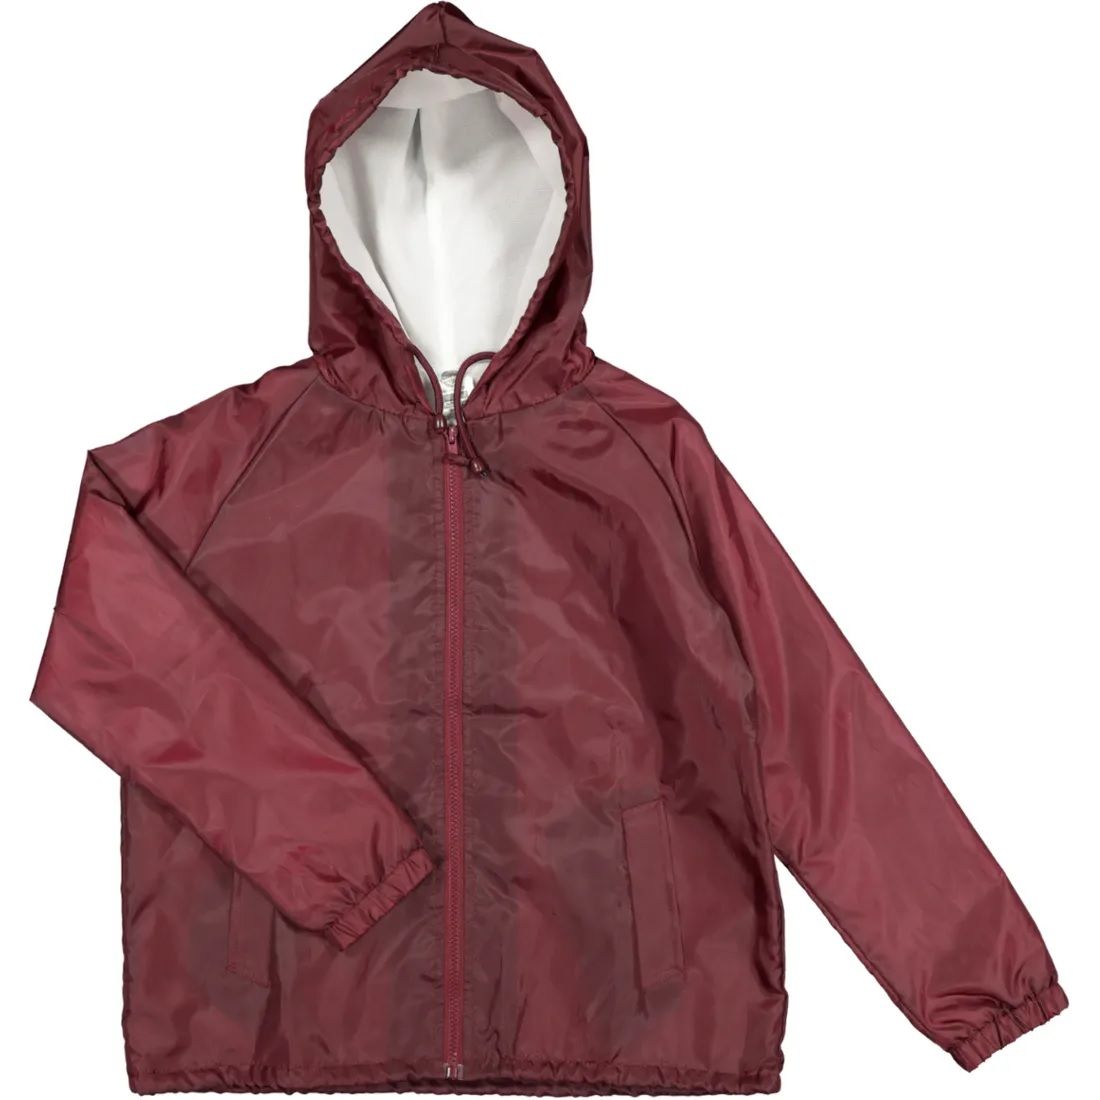 School Rain Jacket Hooded Polar Fleece Drymac - Maroon | Shop Today ...